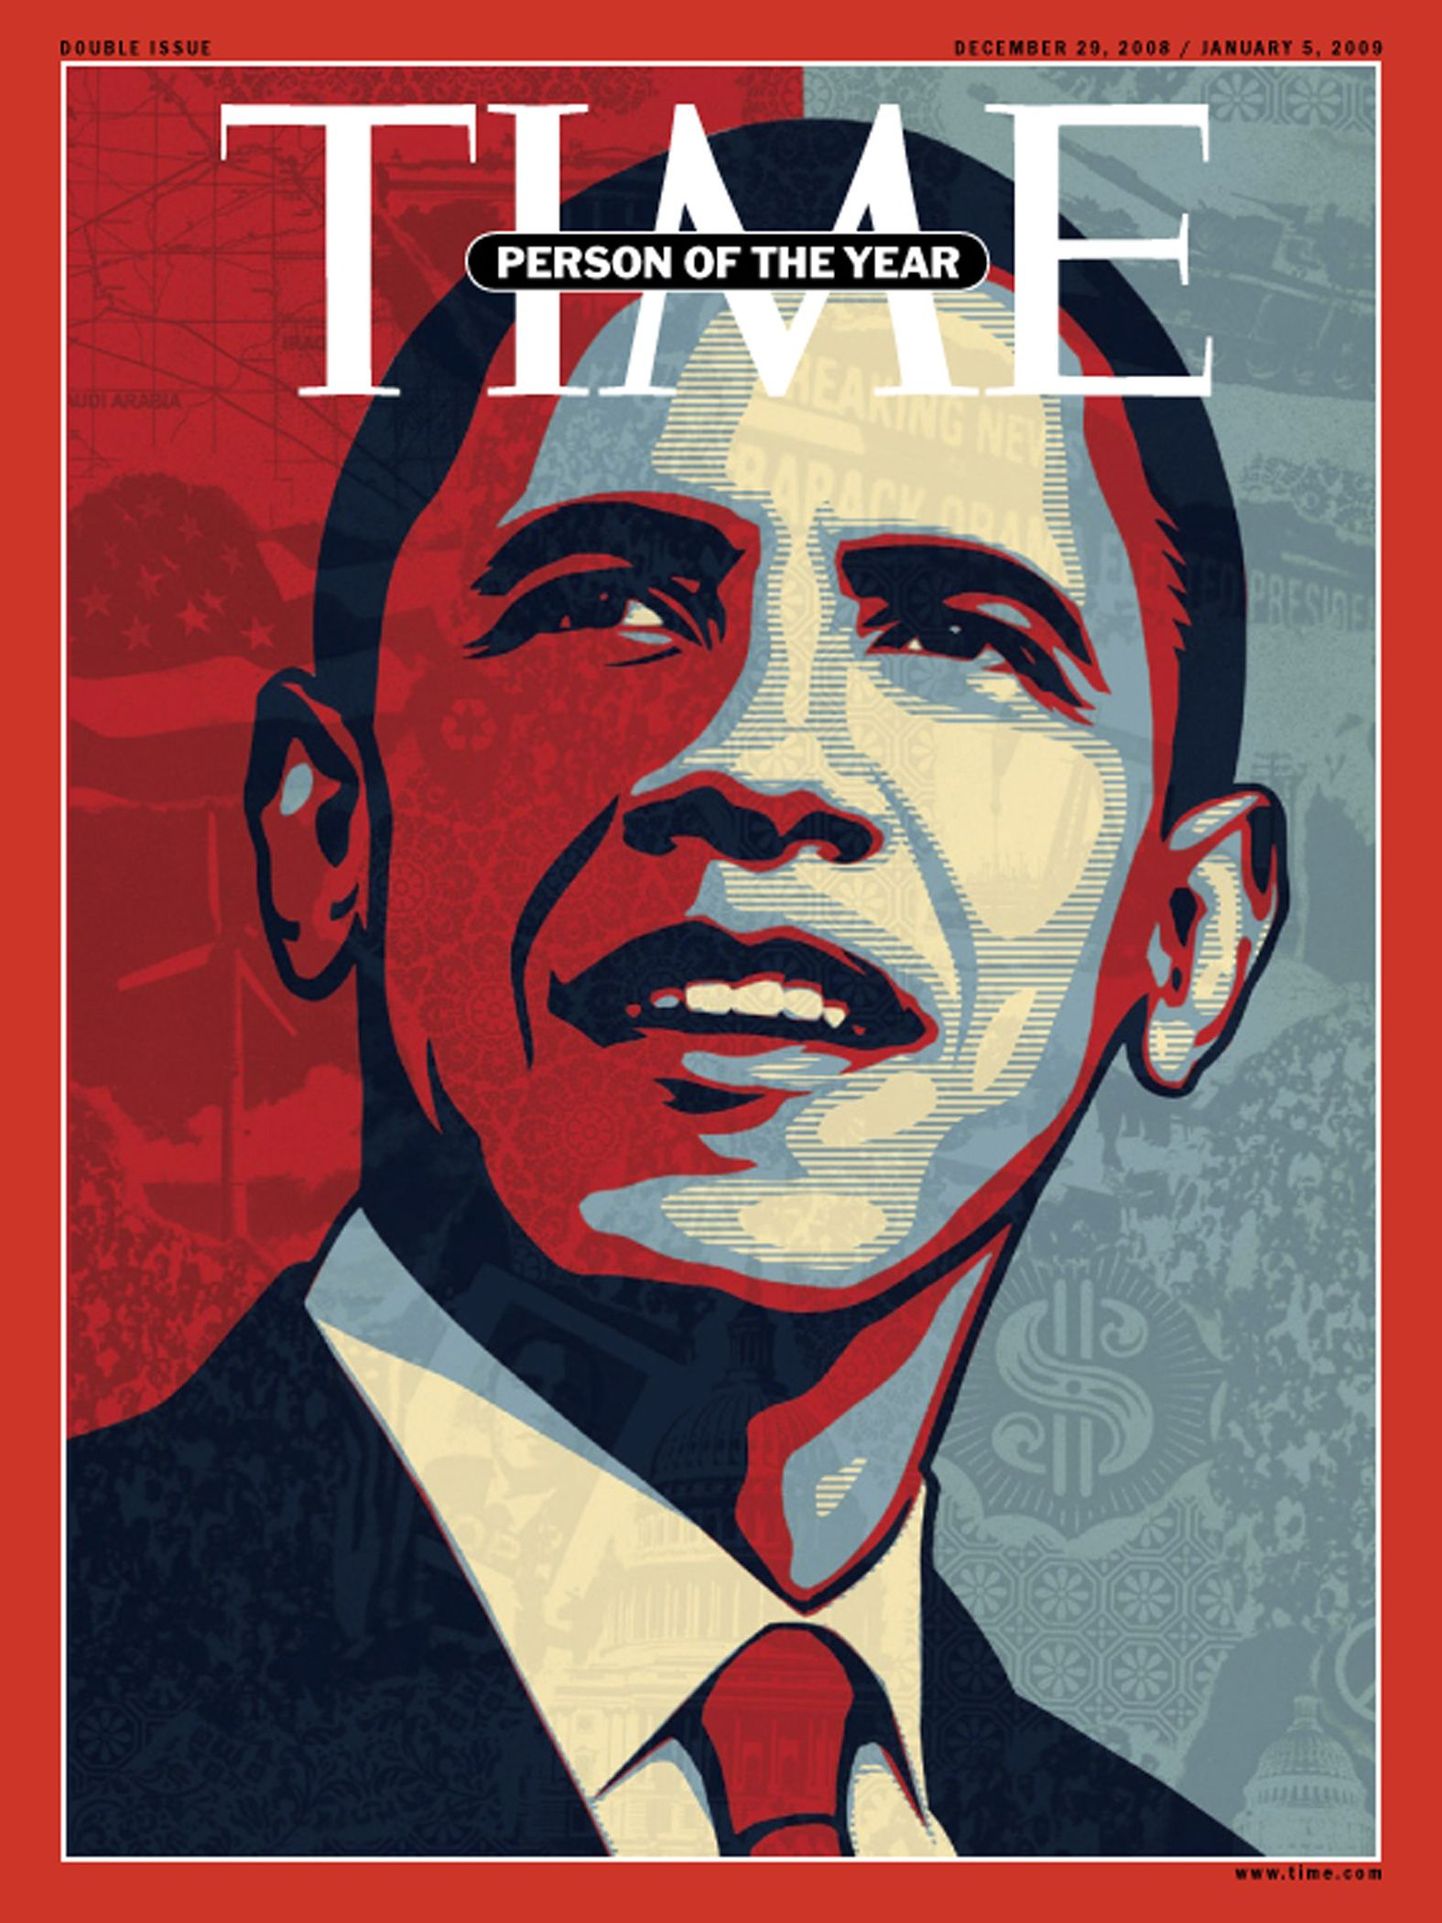 Barack Obama on Time'i aasta inimene 2008.